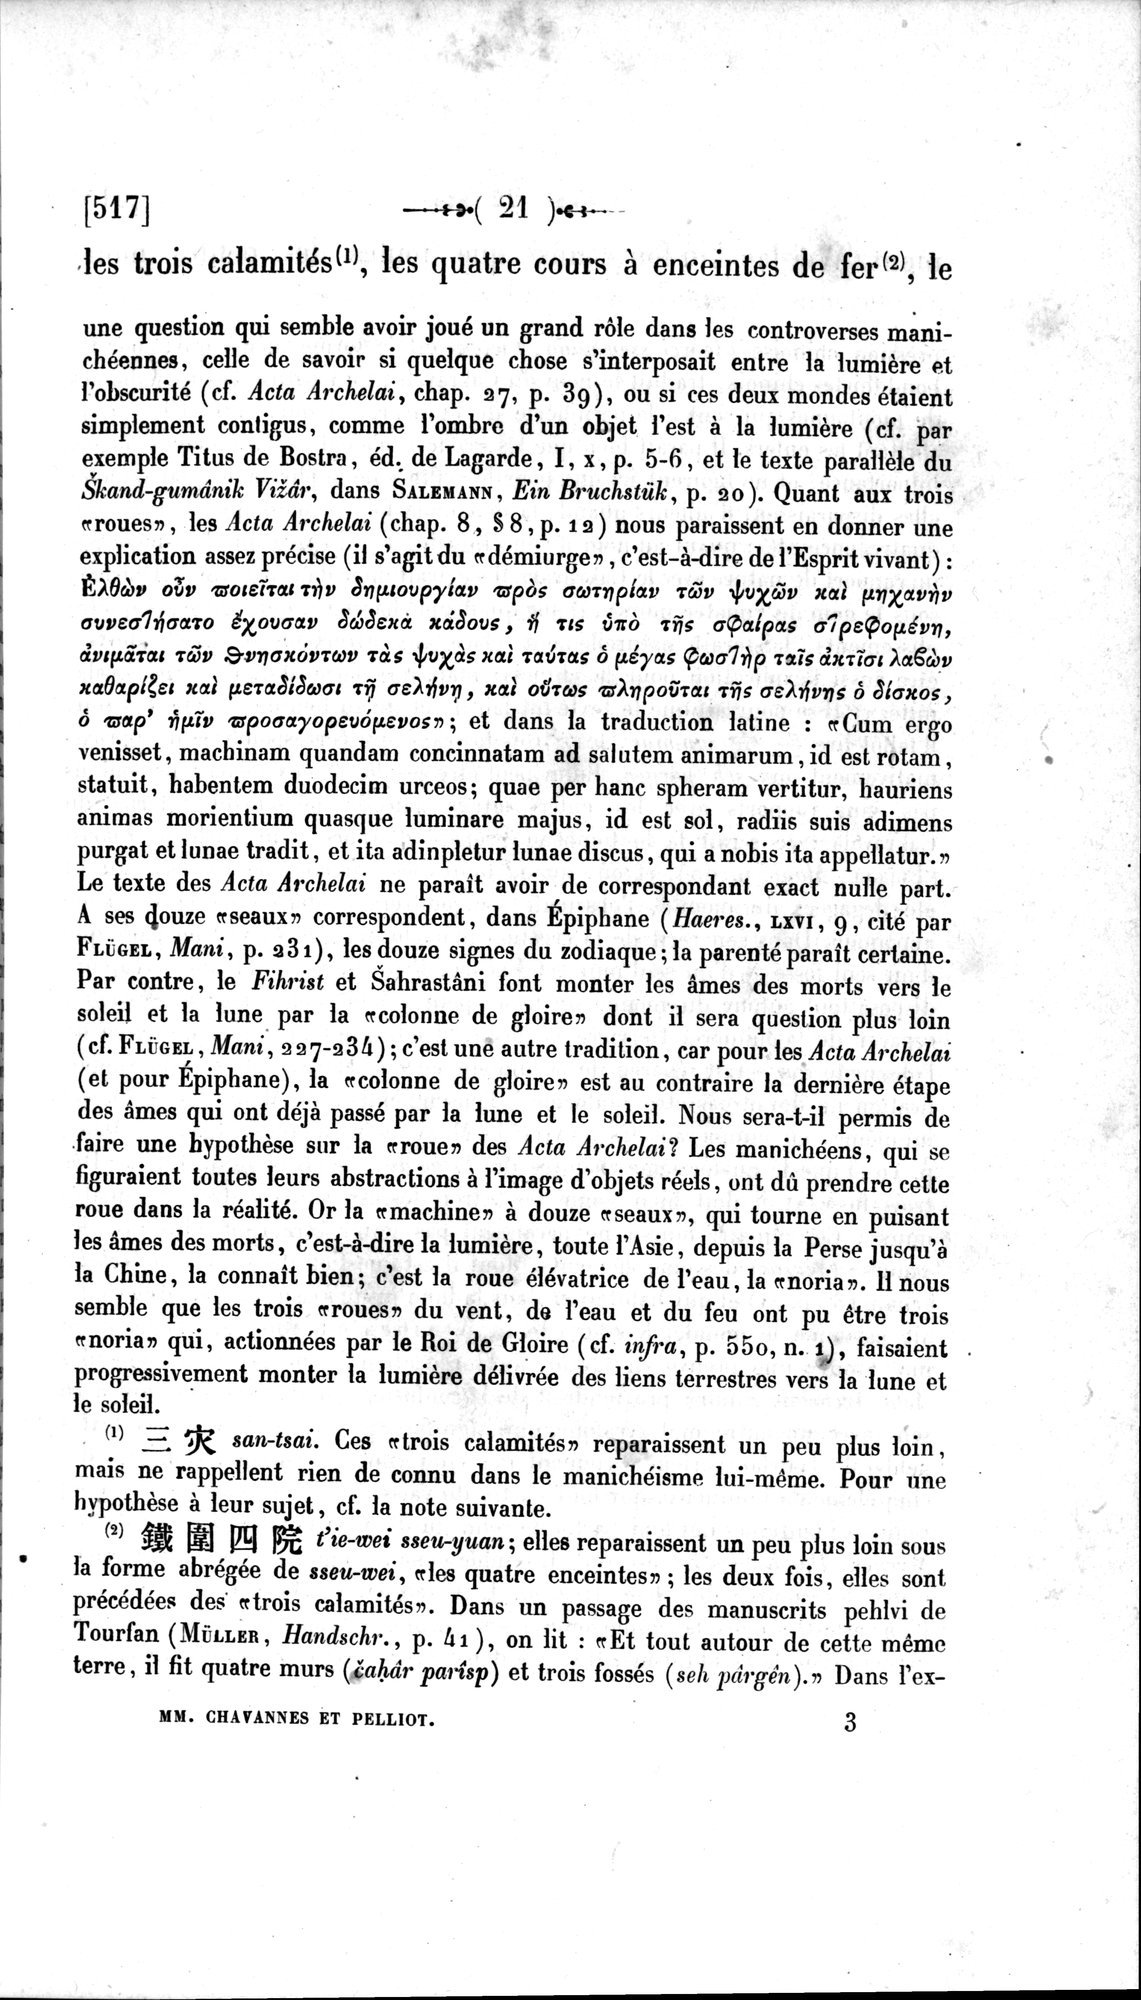 Un traité manichéen retrouvé en Chine : vol.1 / Page 31 (Grayscale High Resolution Image)